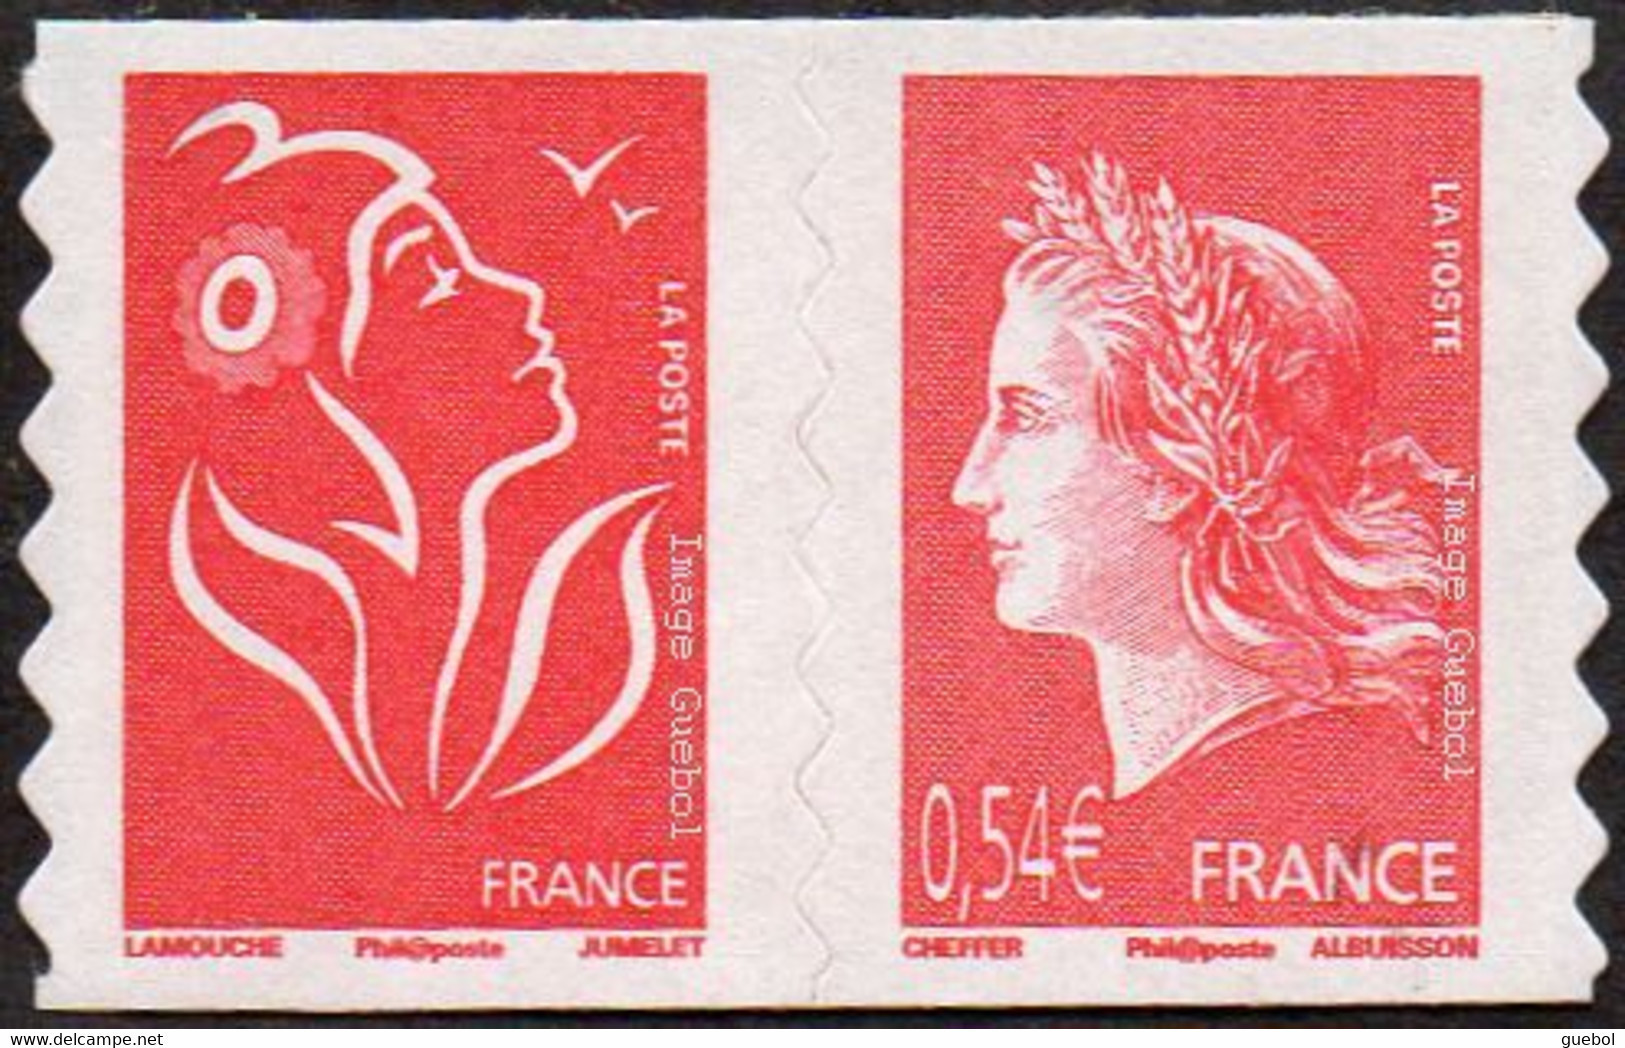 France N° 4109 P Ou 139 P Autoadhésif - Marianne Lamouche Cheffer, Paire Du Carnet Soit Ici 4109 + 3744-b - Unused Stamps